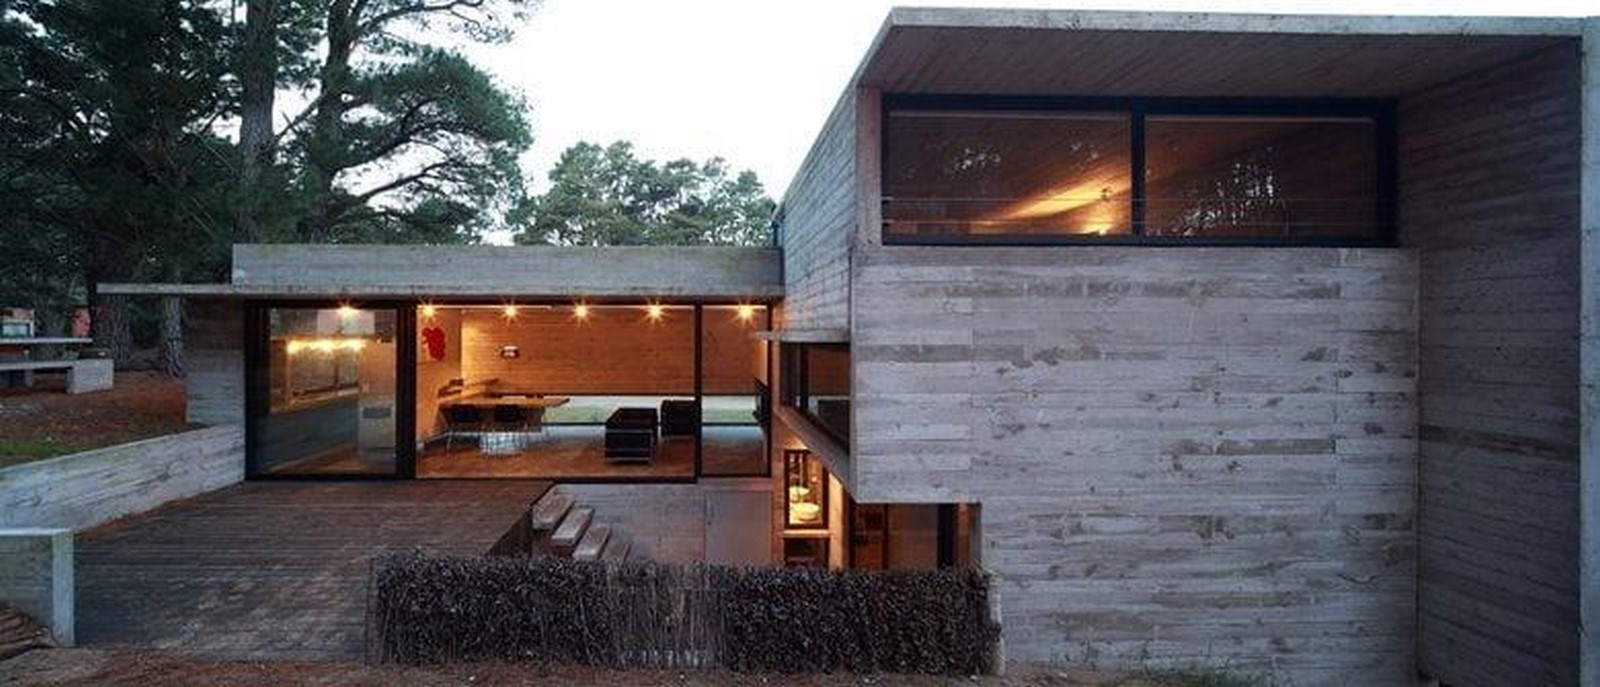 Pedroso House by BAK arquitectos - Sheet15